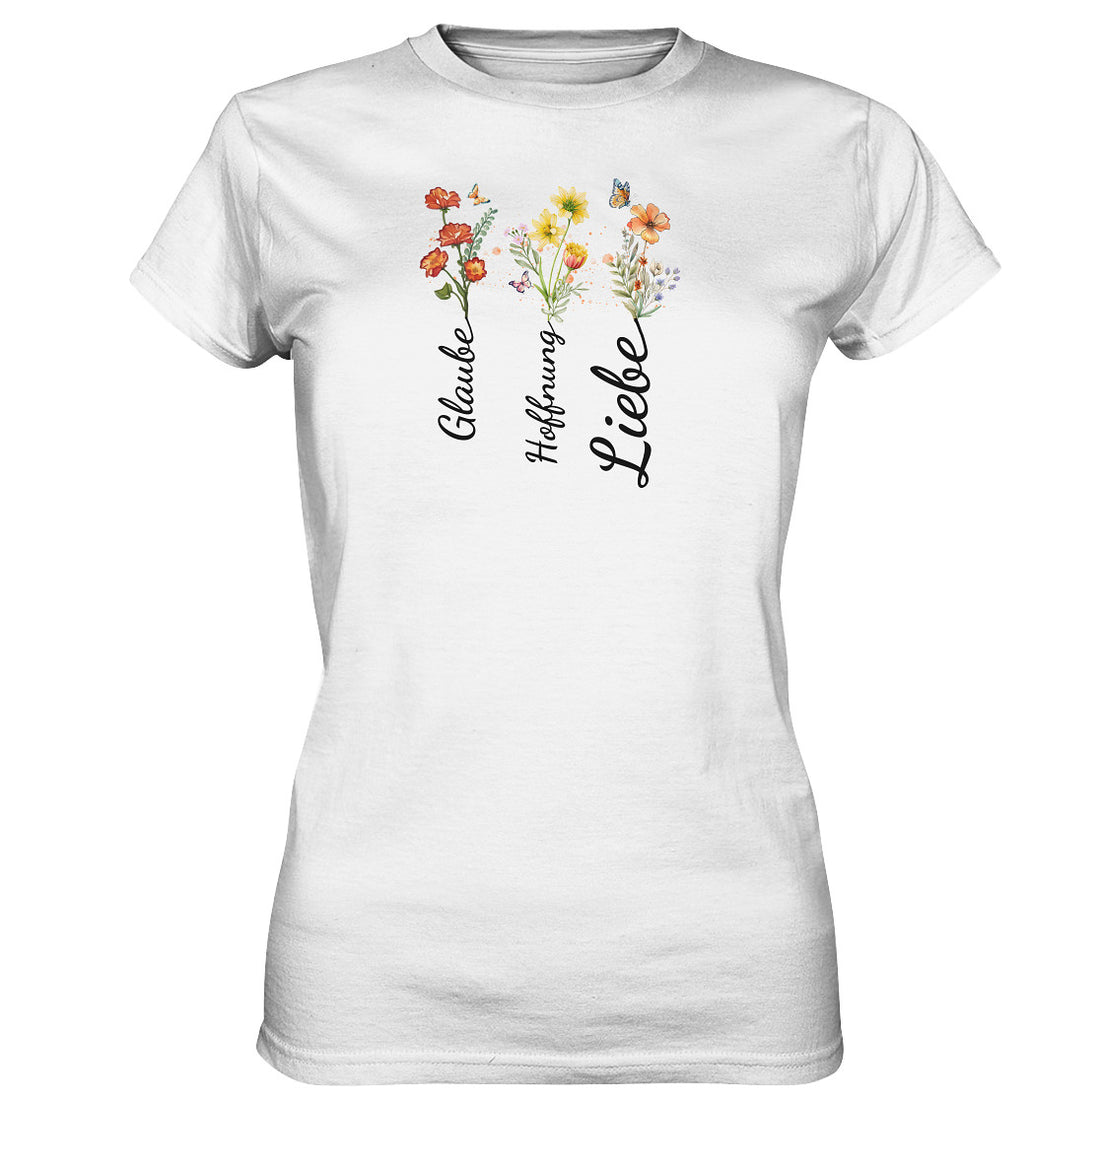 Glaube, Hoffnung, Liebe - Ladies Premium Shirt